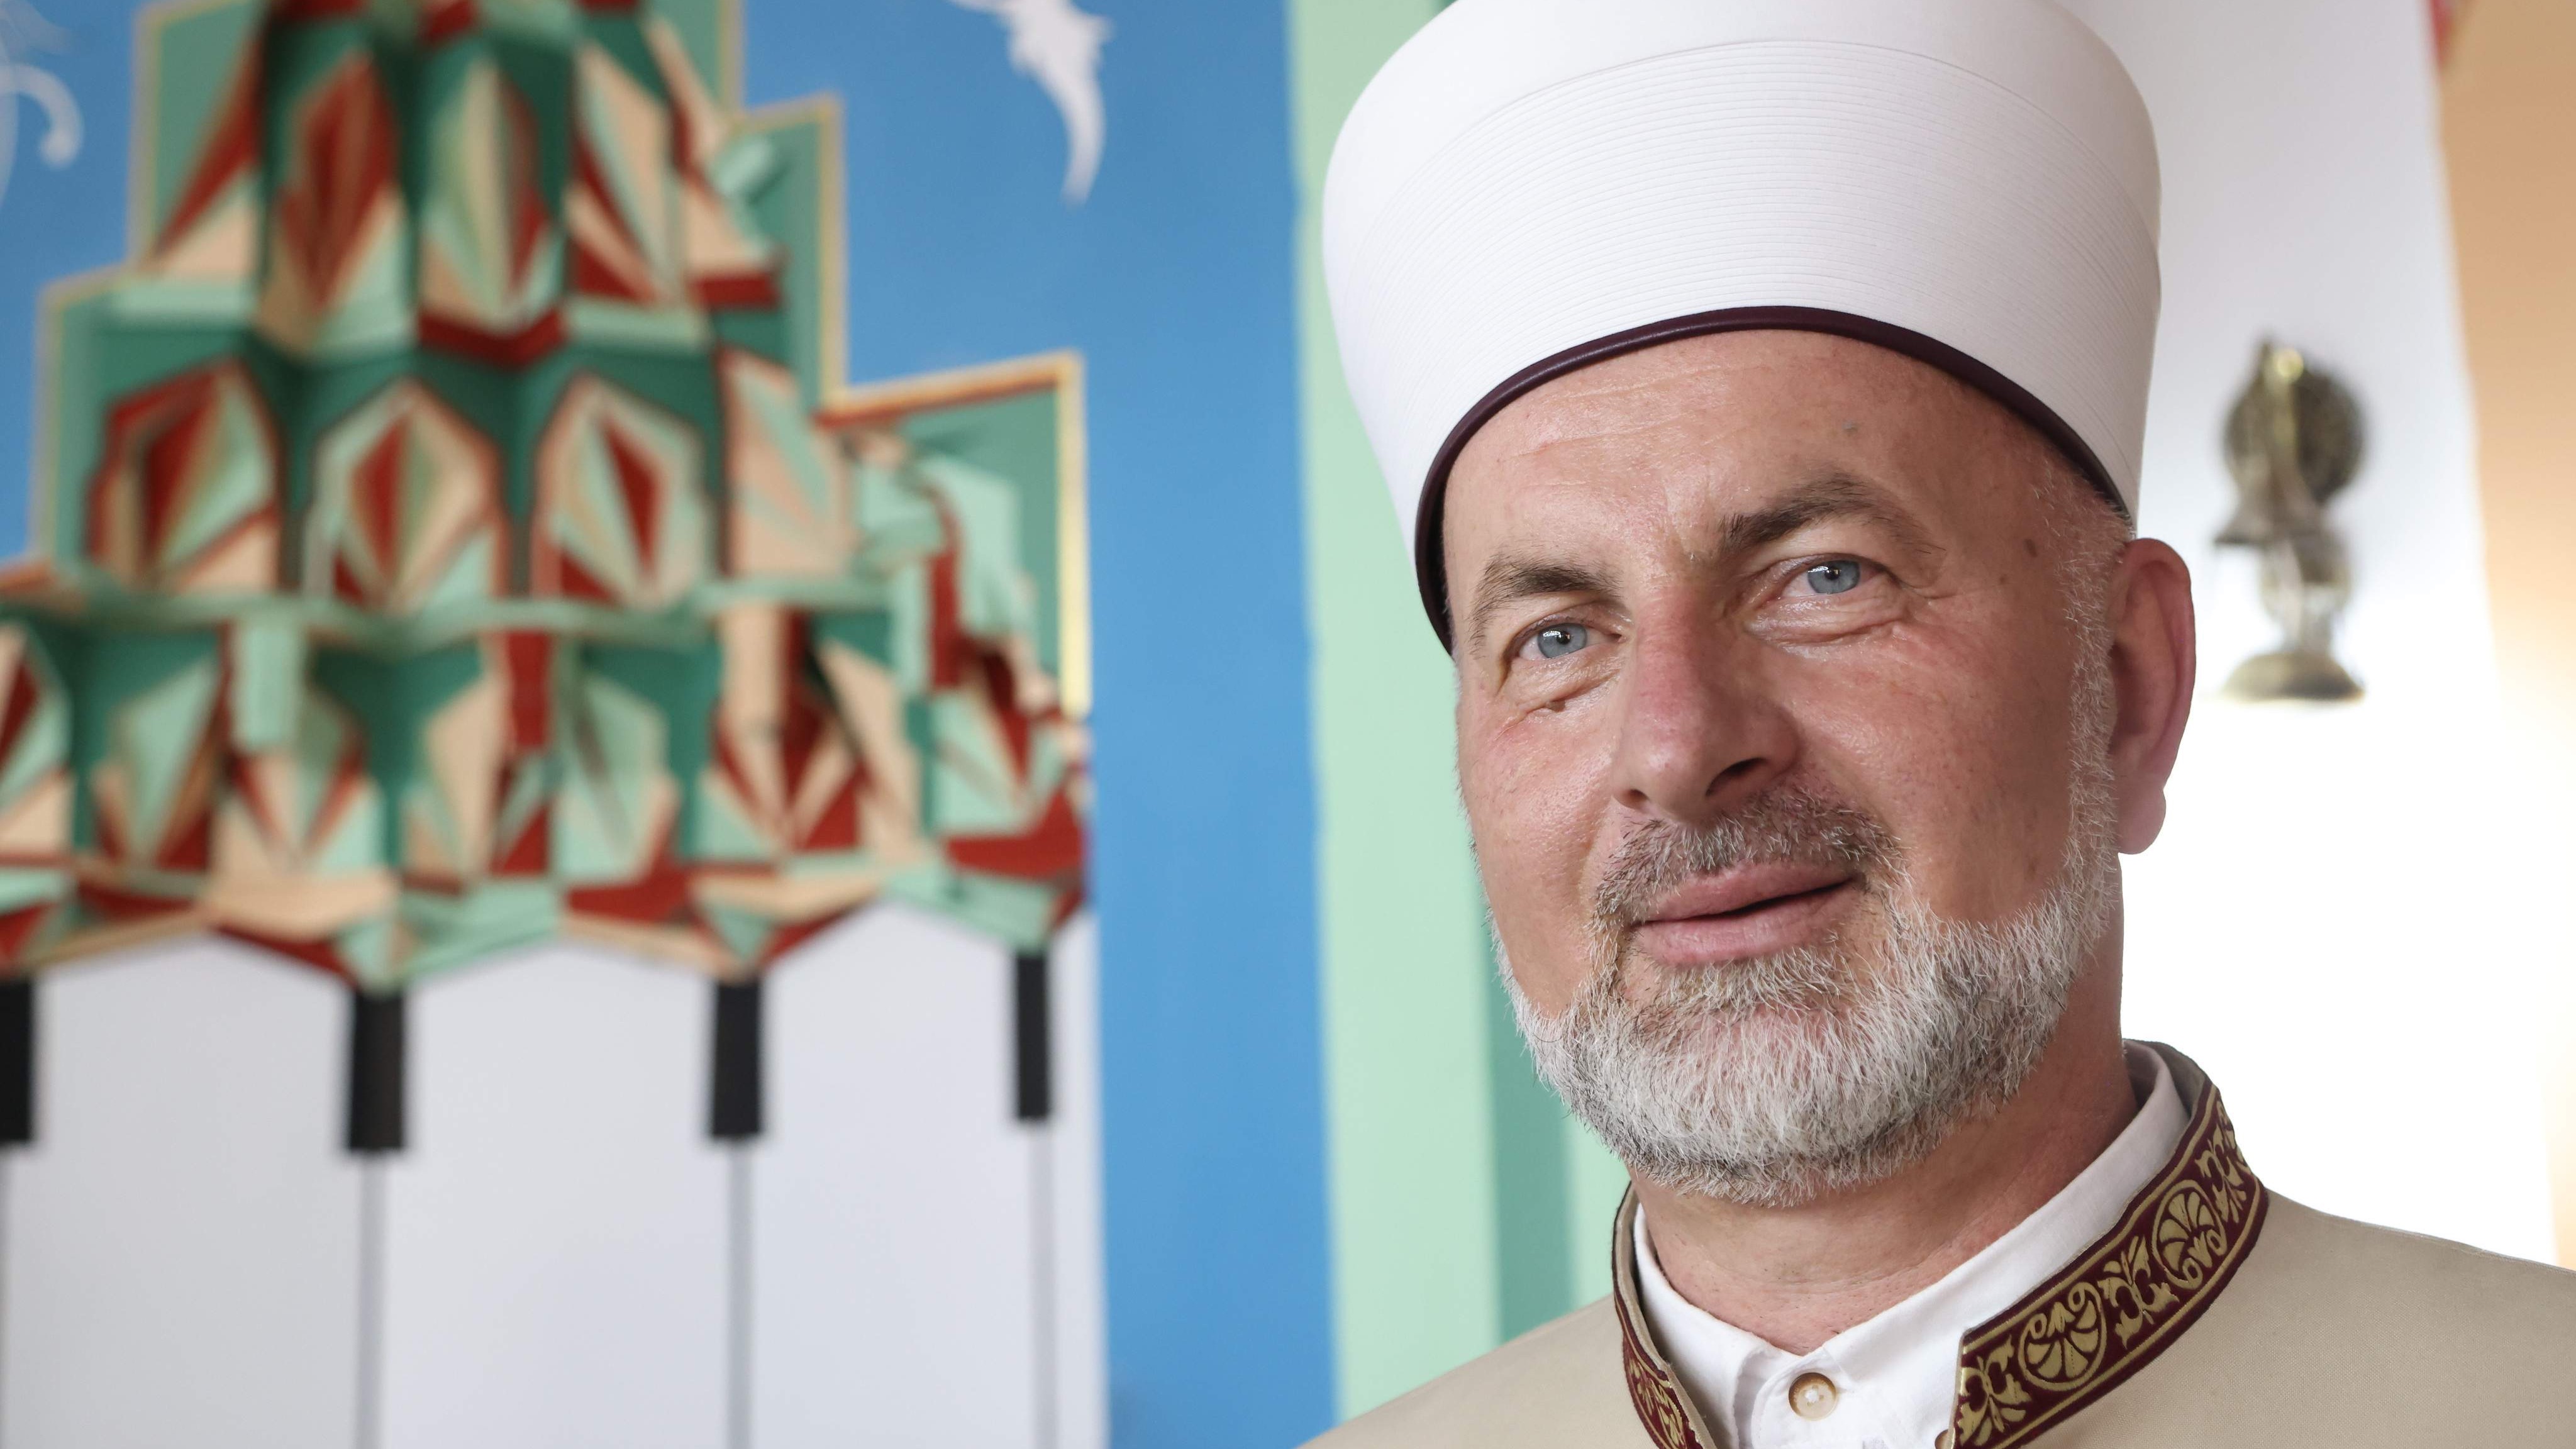 Muftija Pitić u Čajniču: Ovaj dan je ljepota, i ovaj džemat je ljepota